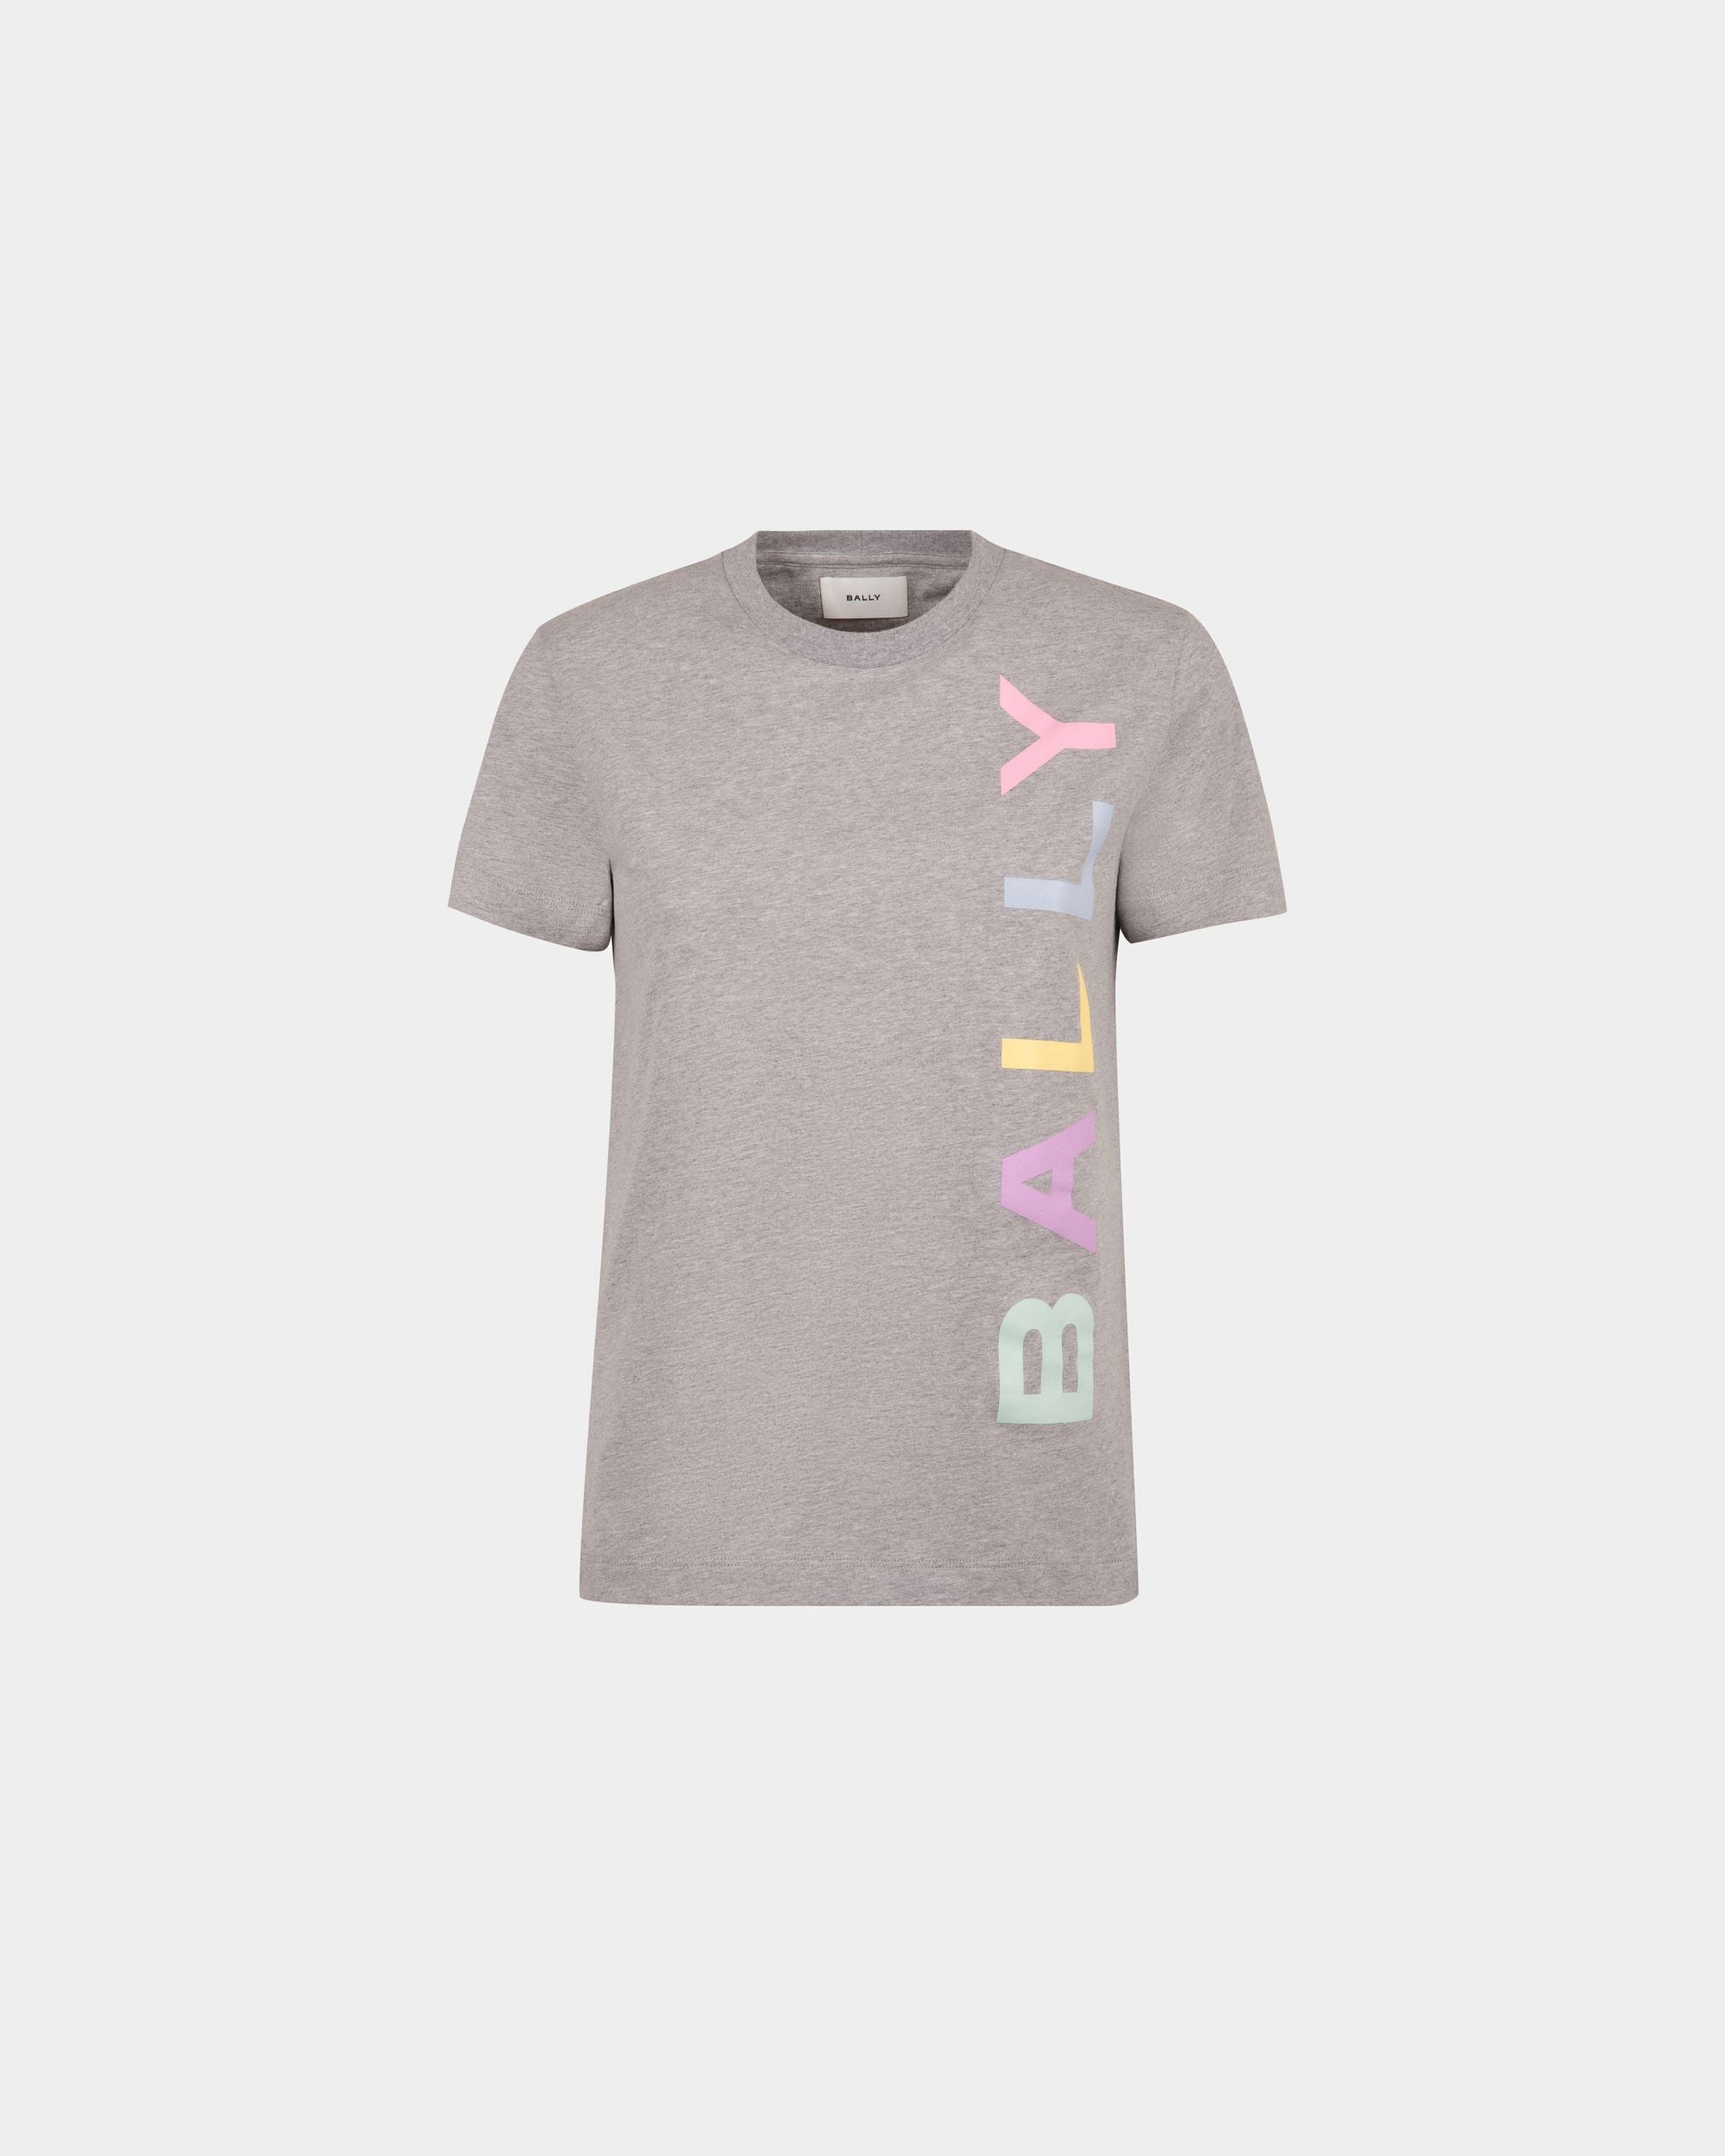 T-shirt da donna in cotone grigio | Bally | Still Life Fronte